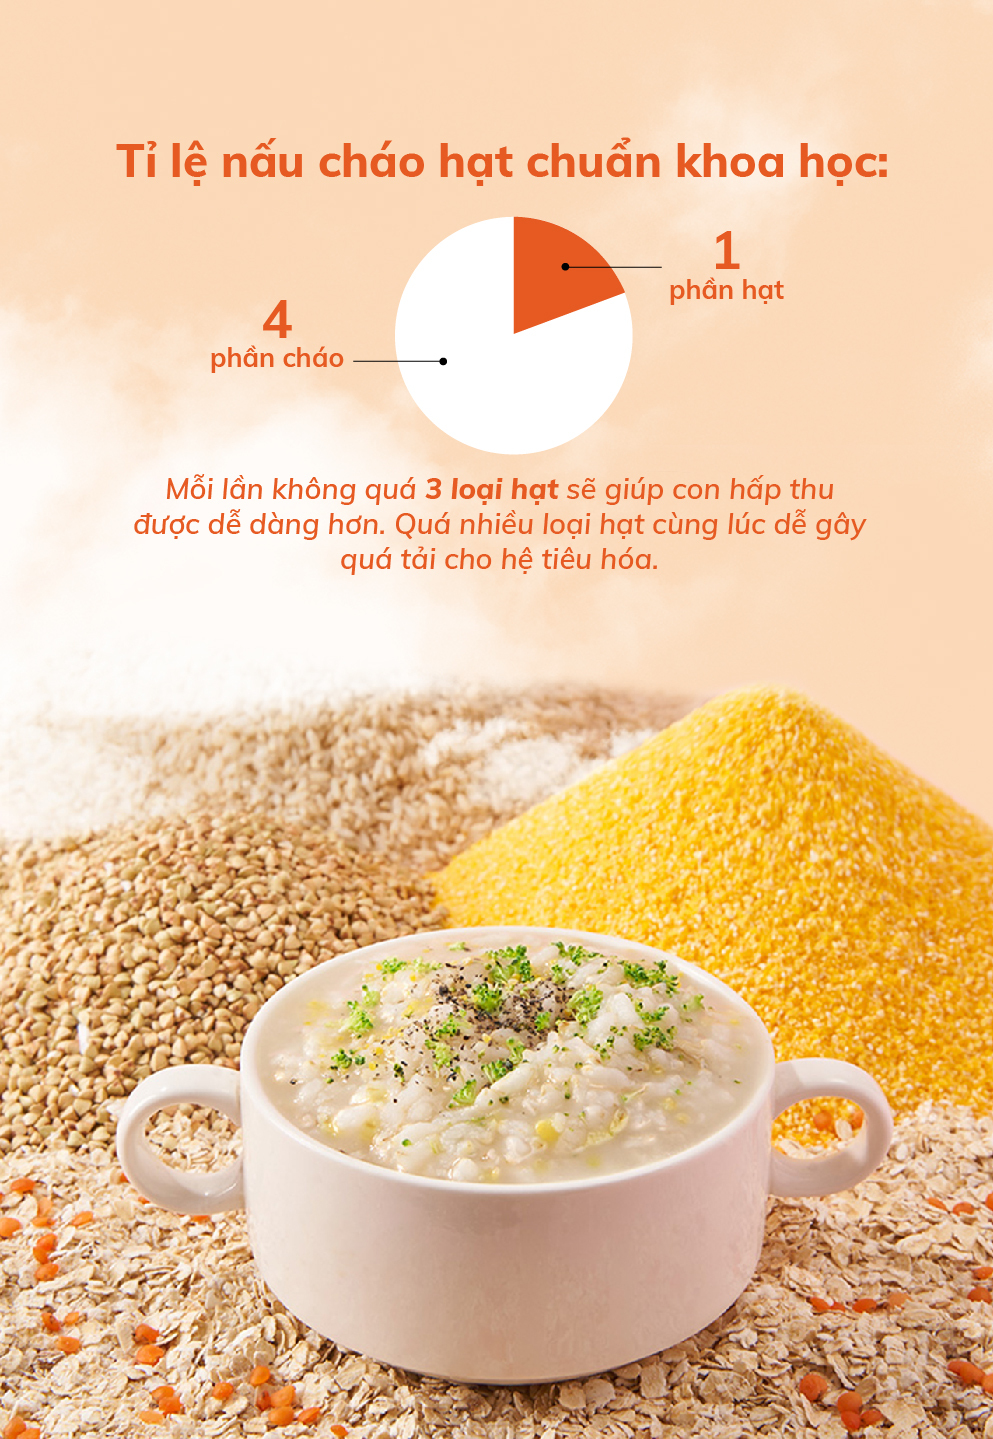 Hạt mix Mămmy cho bé ăn dặm giàu chất xơ, bảo vệ đường ruột trên 6 tháng gạo sữa, diêm mạch và yến mạch, hũ 120g